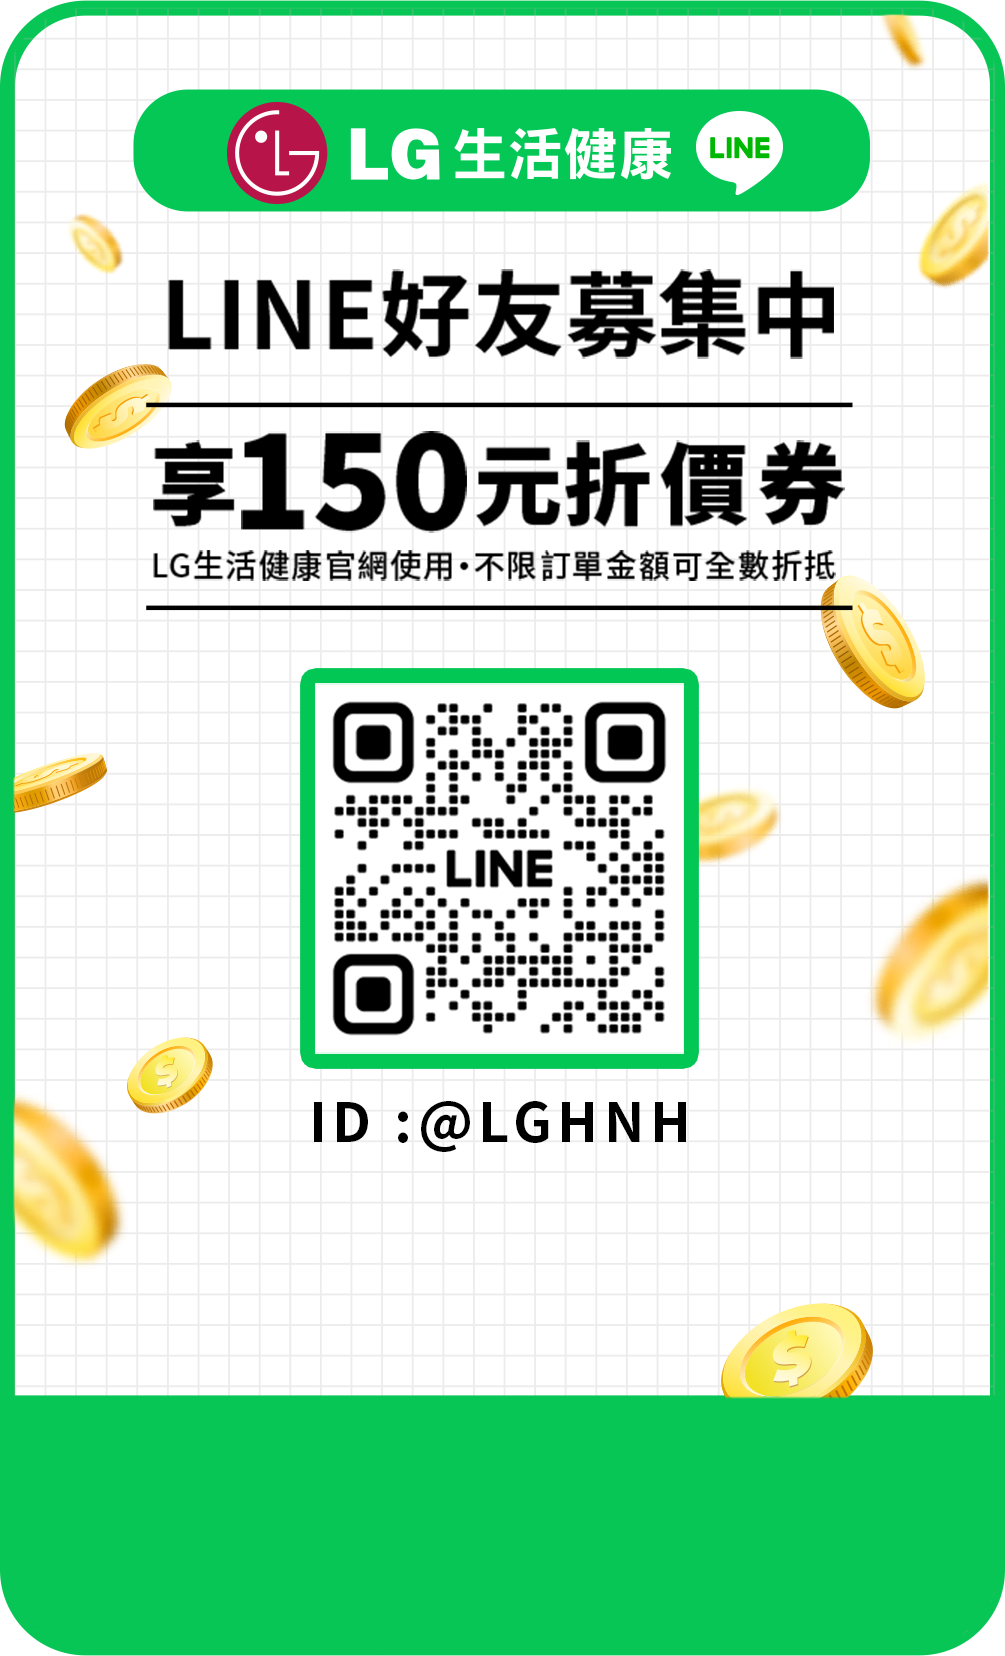 LINE好友募集中 享150元折價券